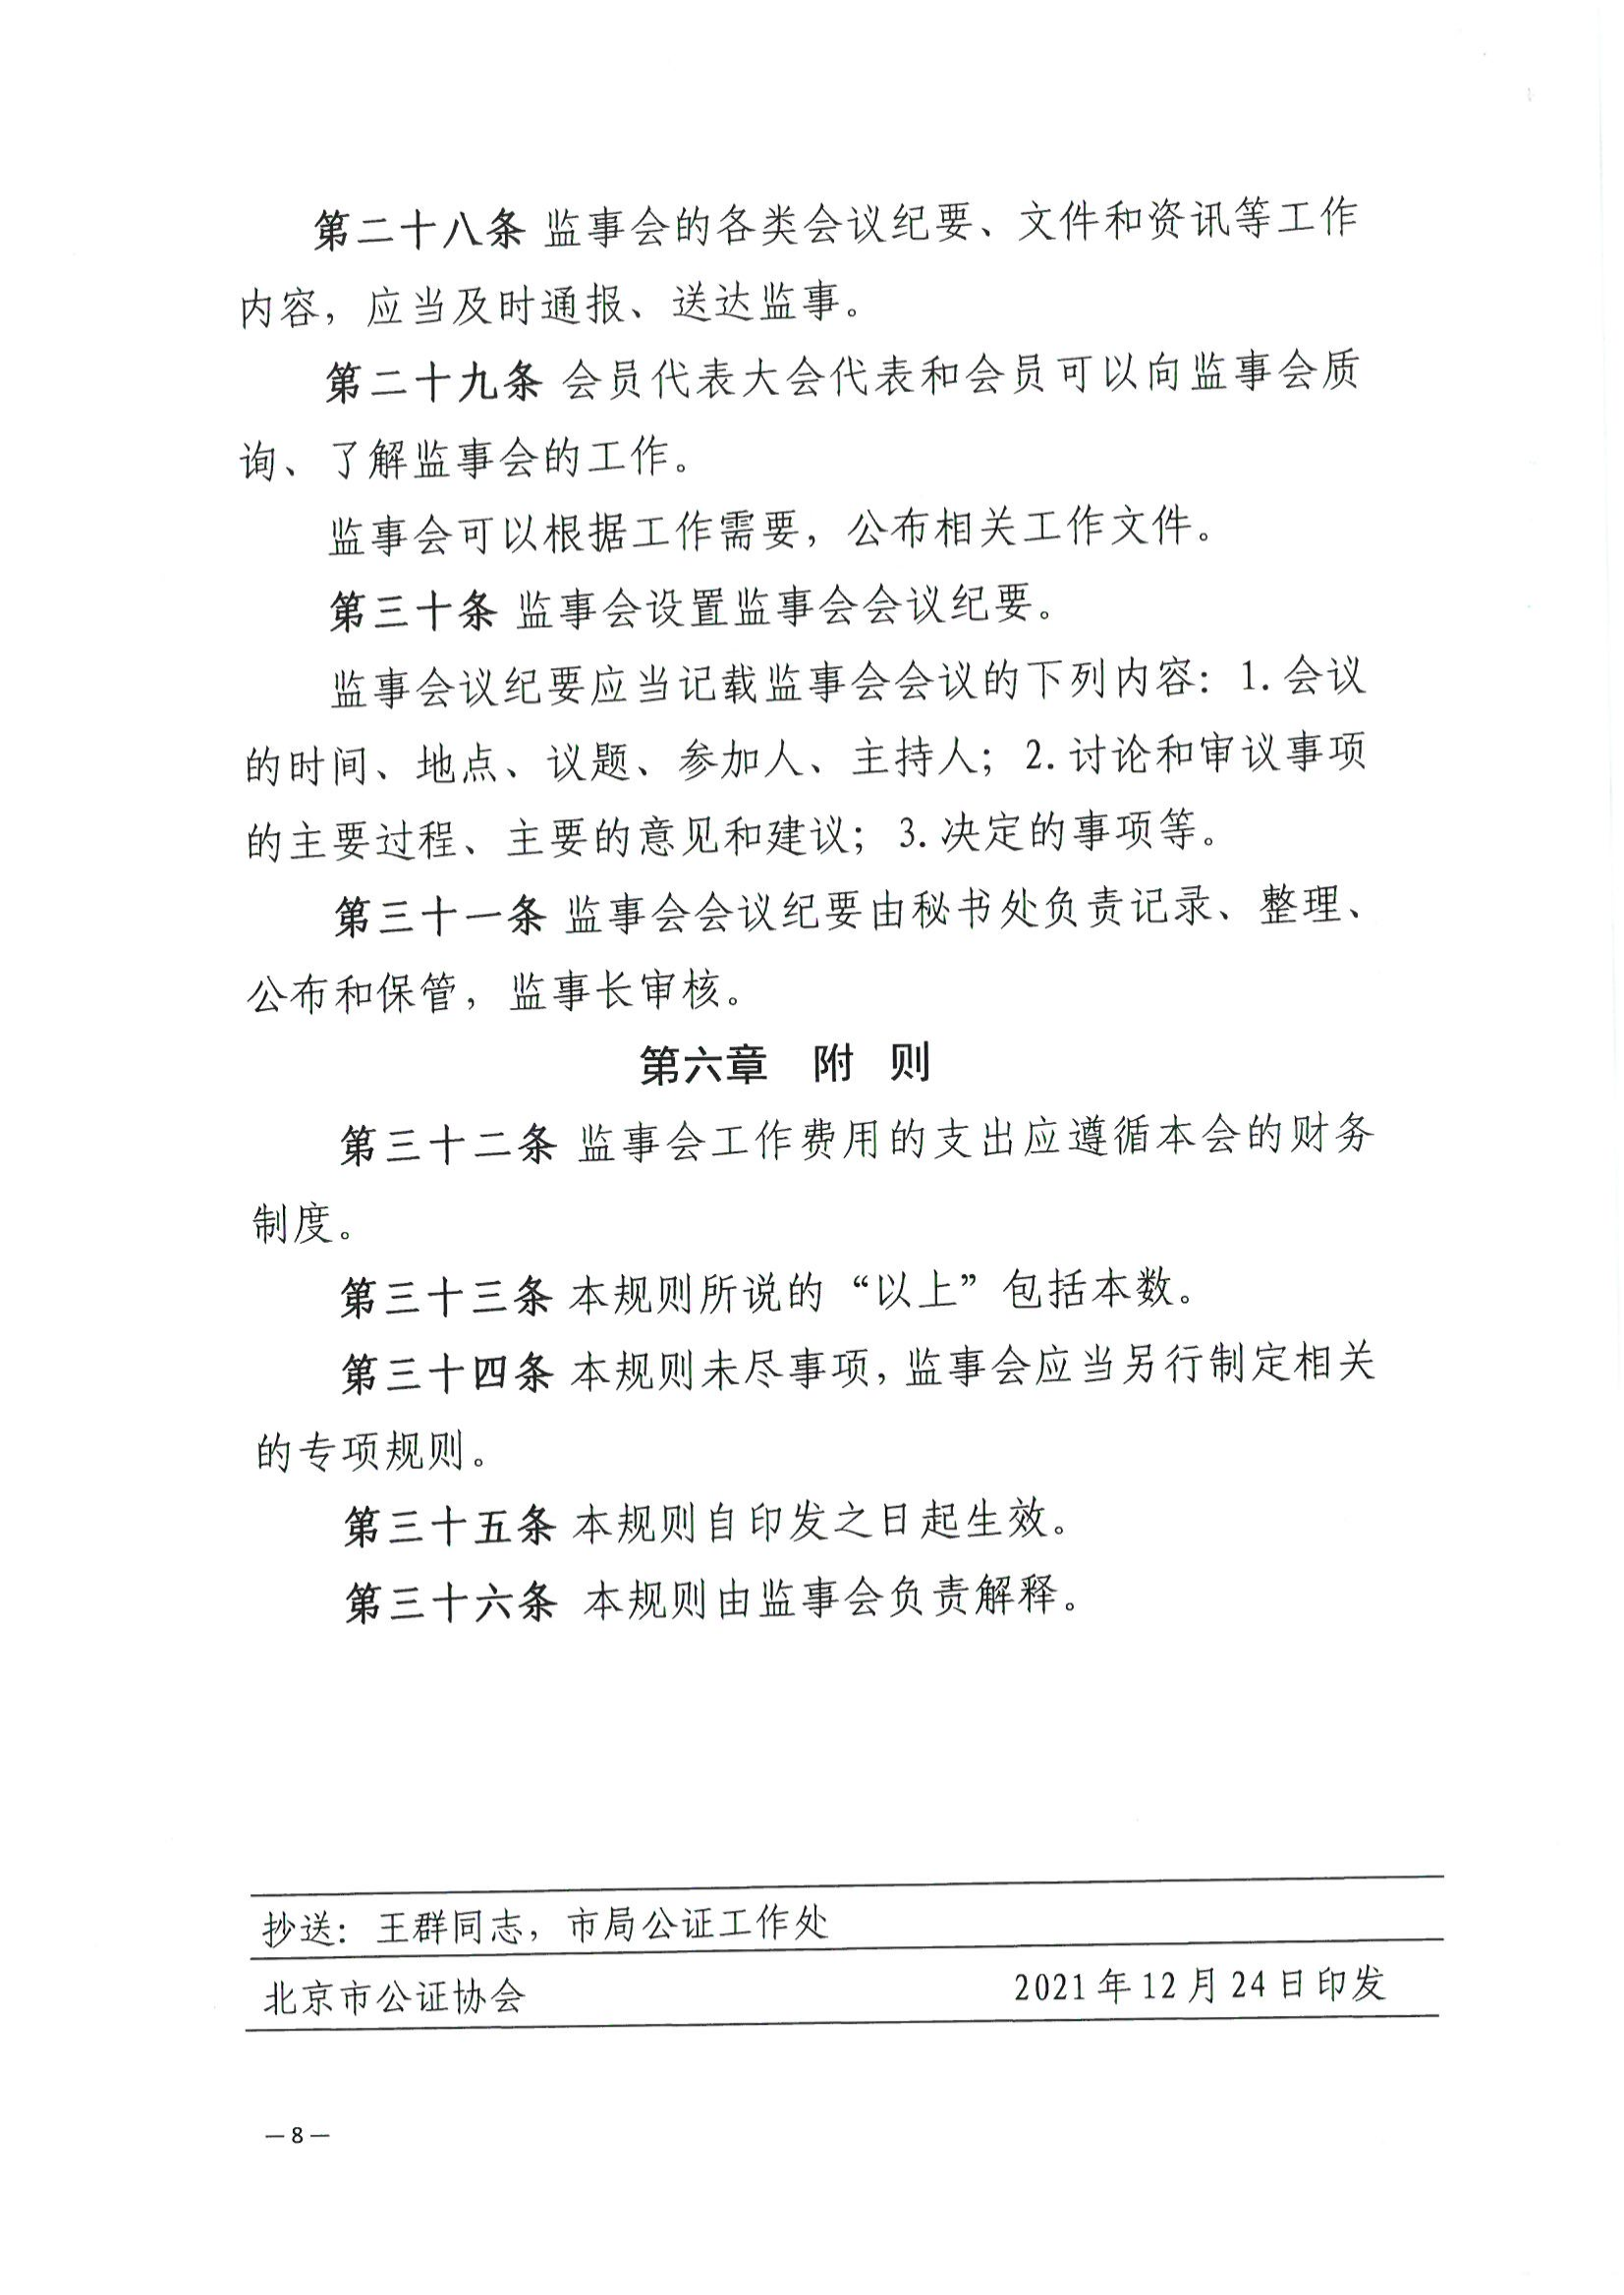 京公协字【2021】32号 北京市公证协会关于印发北京市公证协会监事会工作规则的通知_09